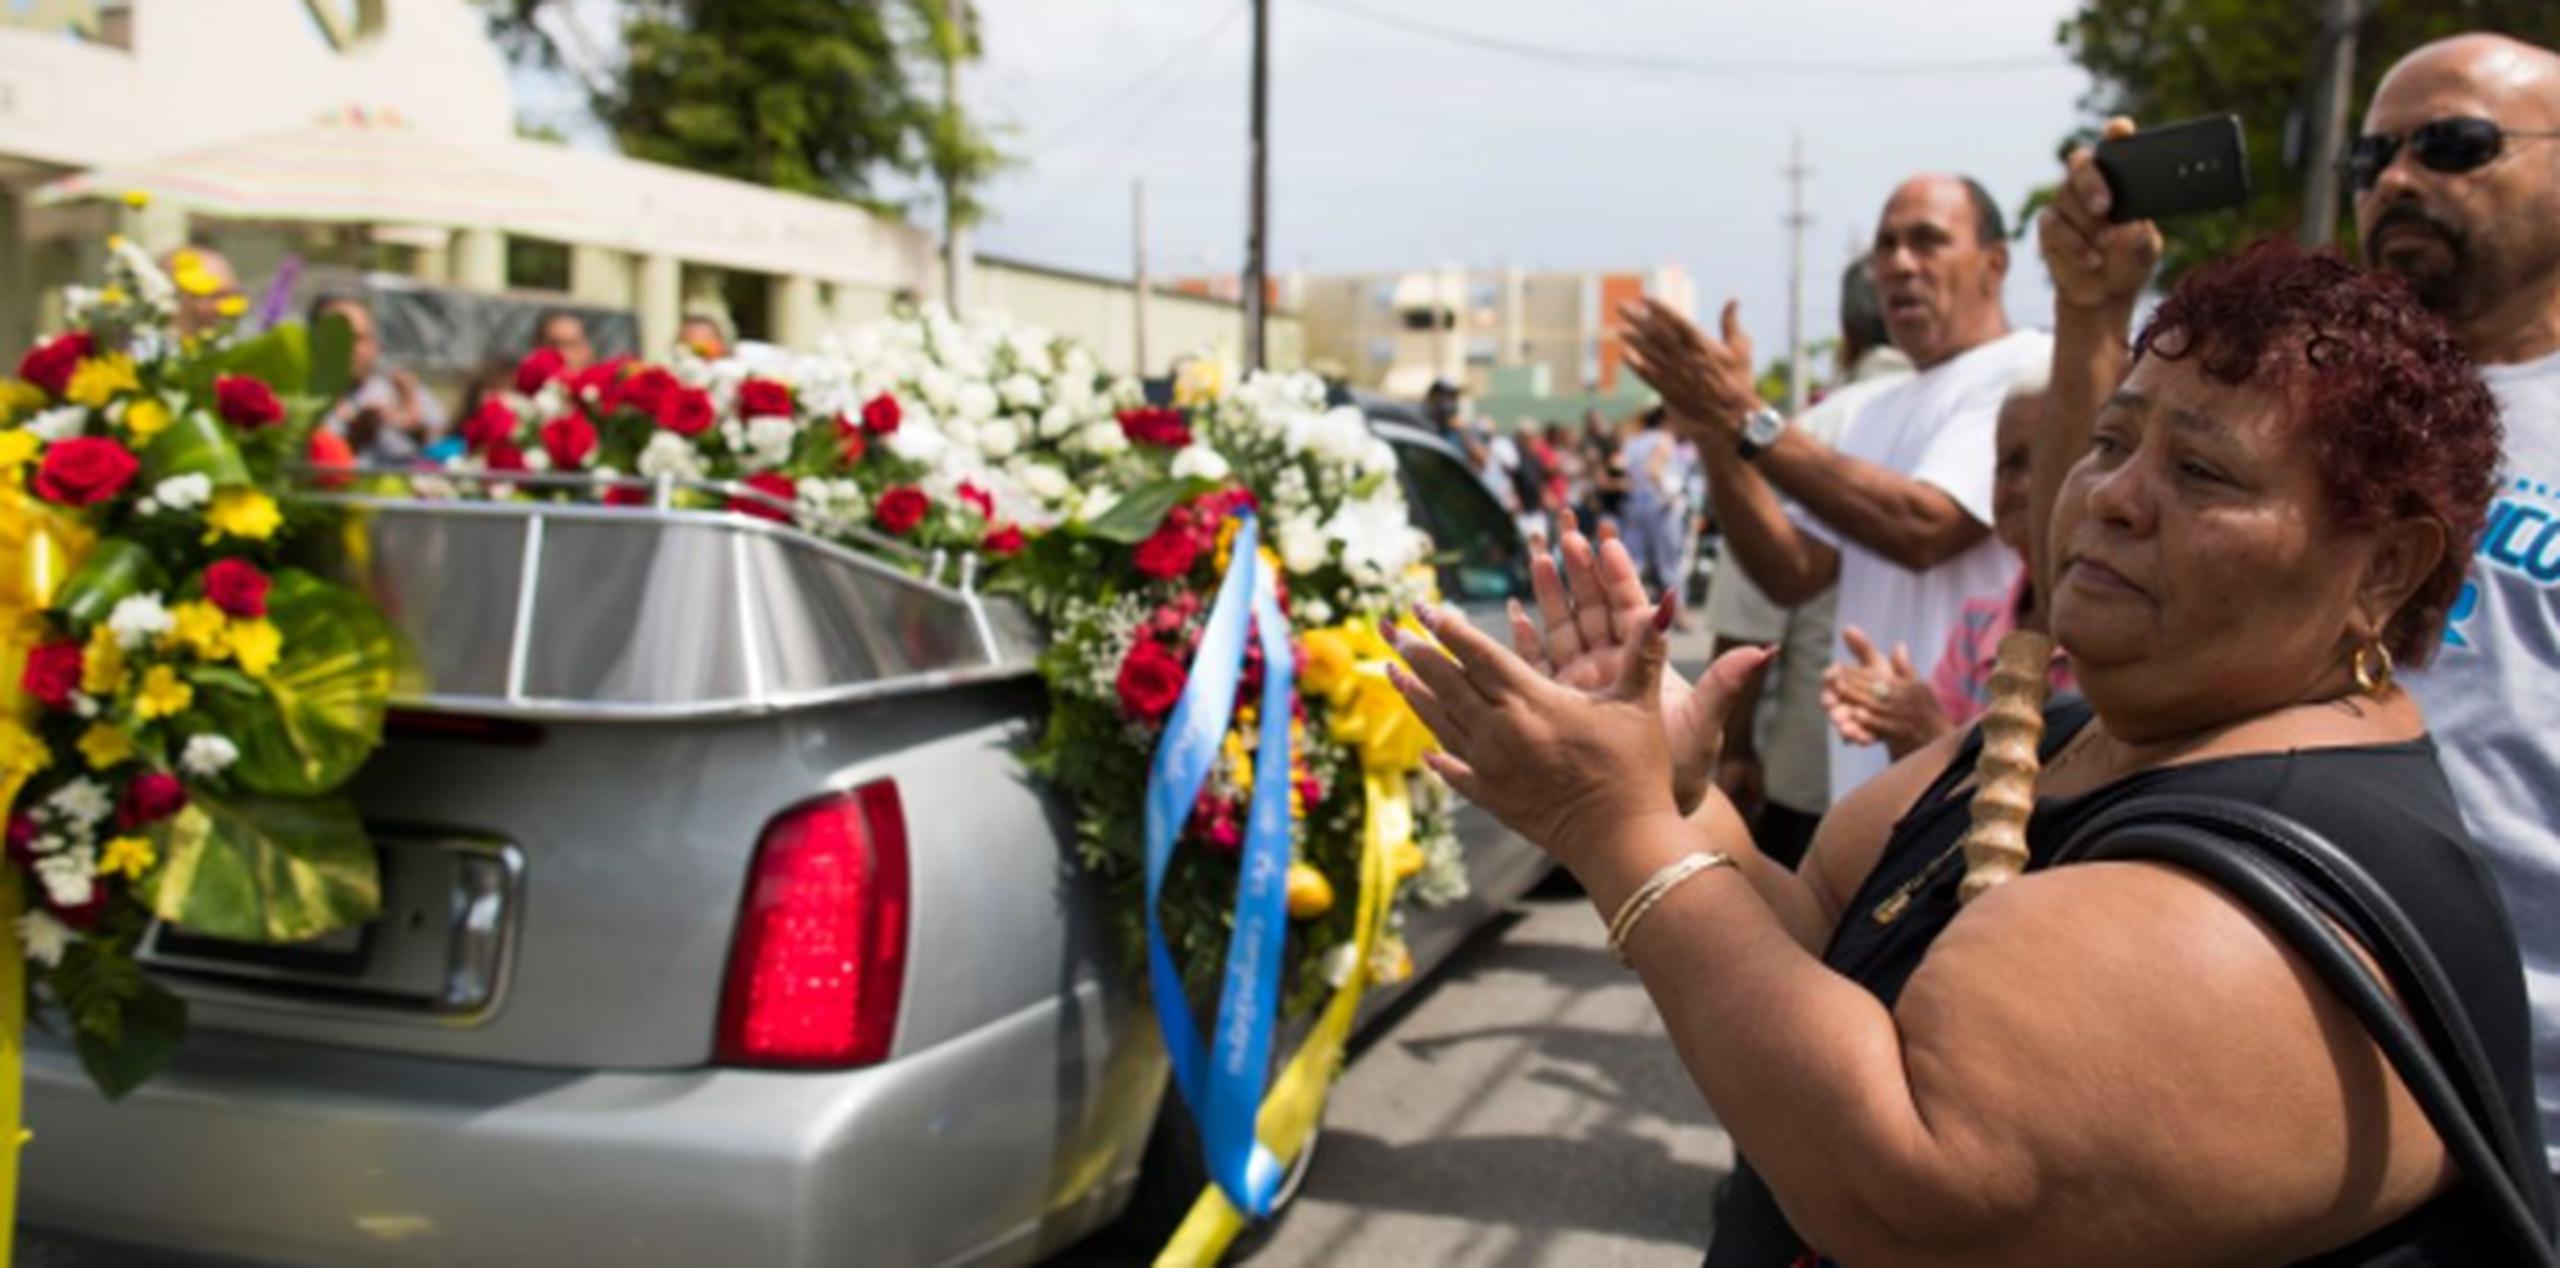 El coche fúnebre fue recibido en La Playa por decenas de personas que quisieron despedirse de uno de sus “playeros”. (tonito.zayas@gfrmedia.com)